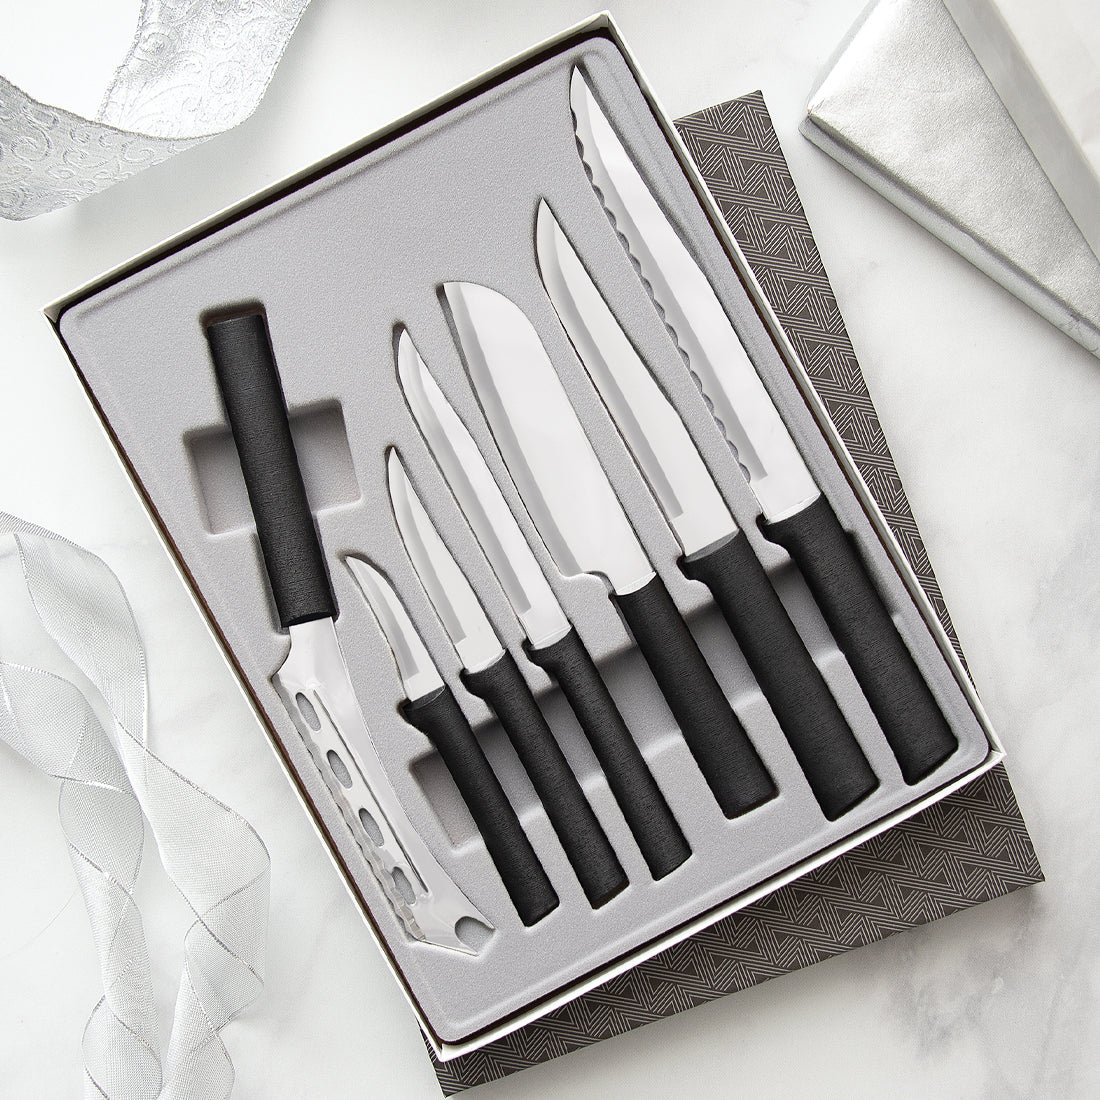 Rada Kitchen Basics Knife Set - Homestead Treasures - USA Kitchen Store